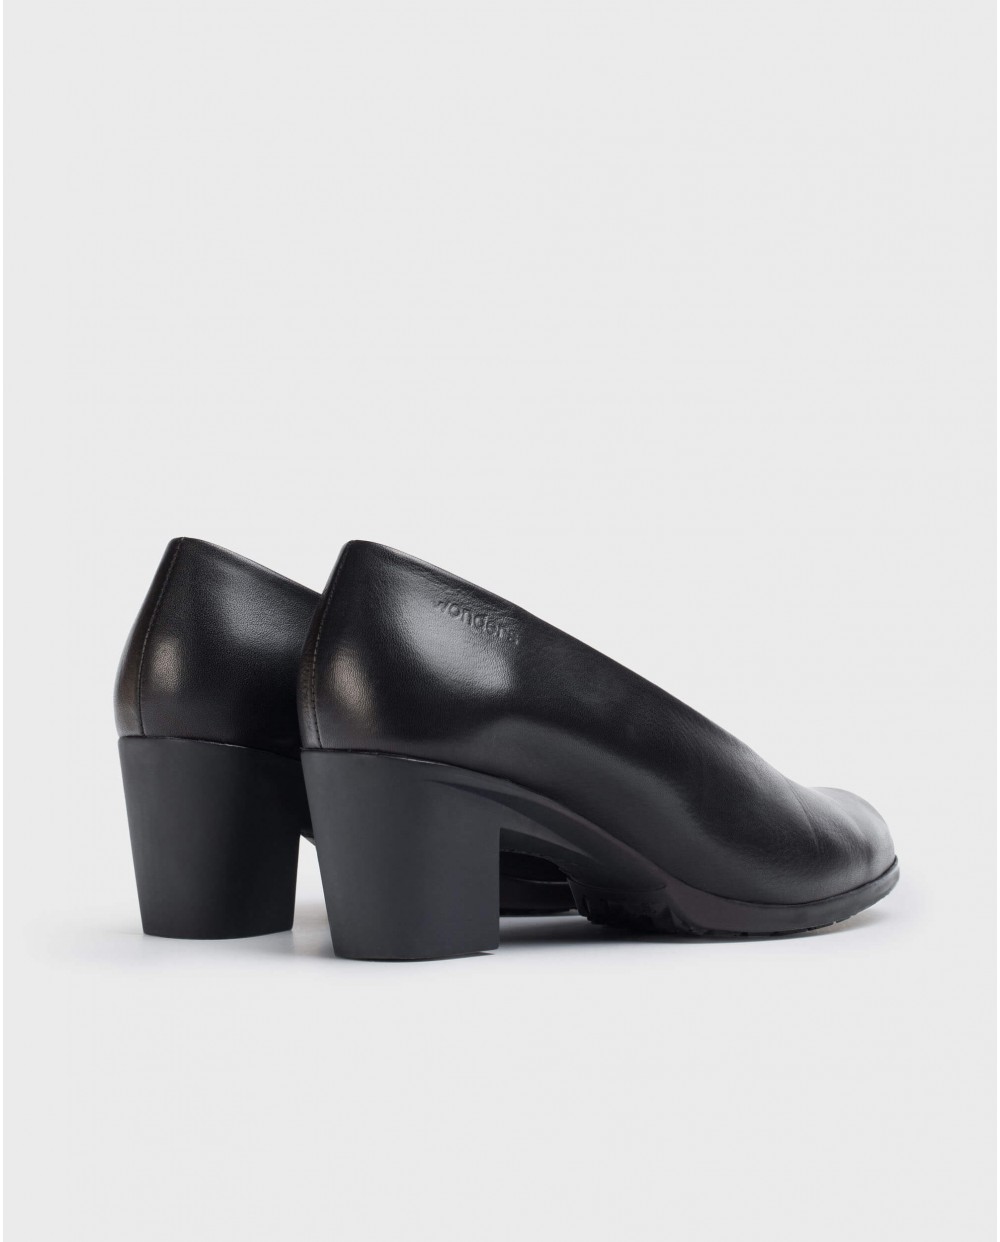 Wonders-Women shoes-Black Grace Shoe